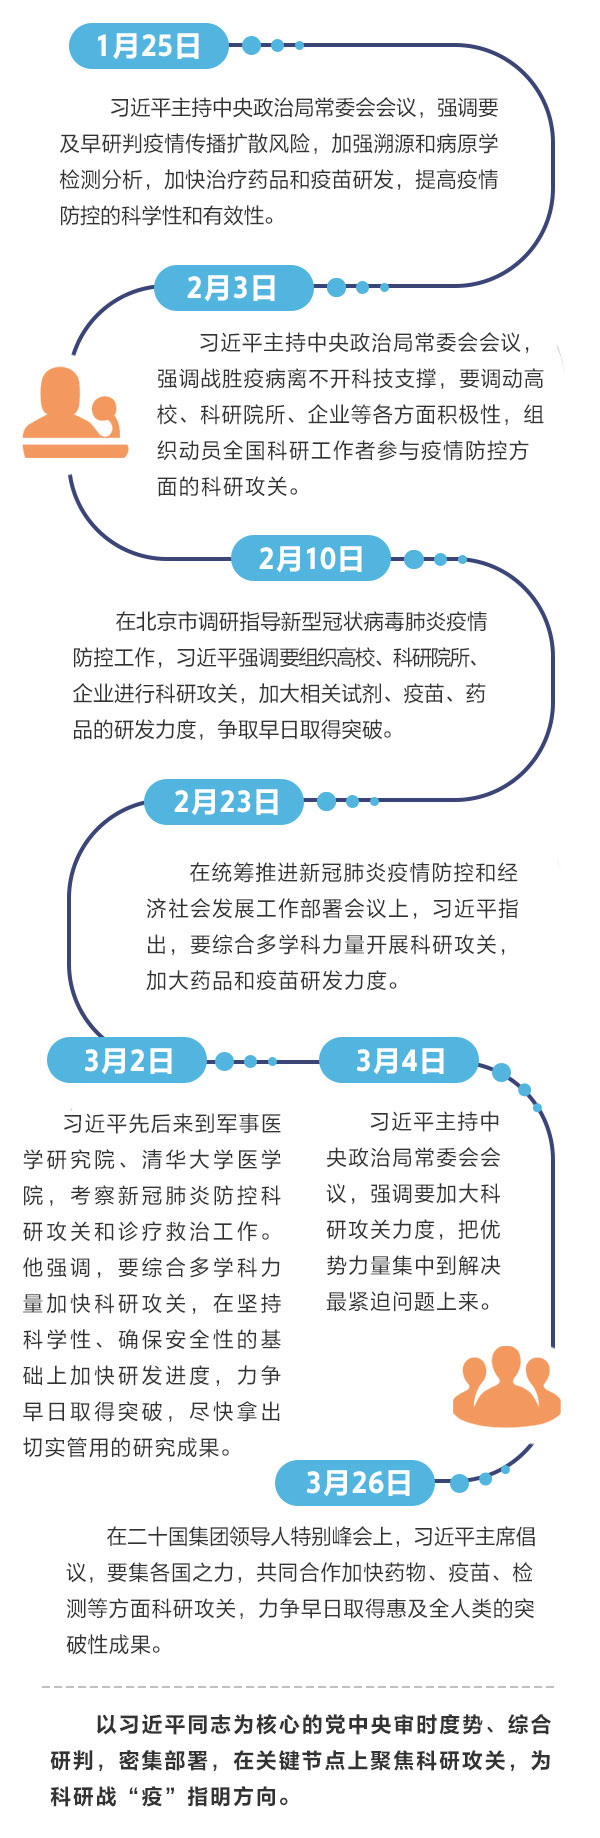 重庆市公安局四任局长被查！市委书记：吸取教训，重塑形象